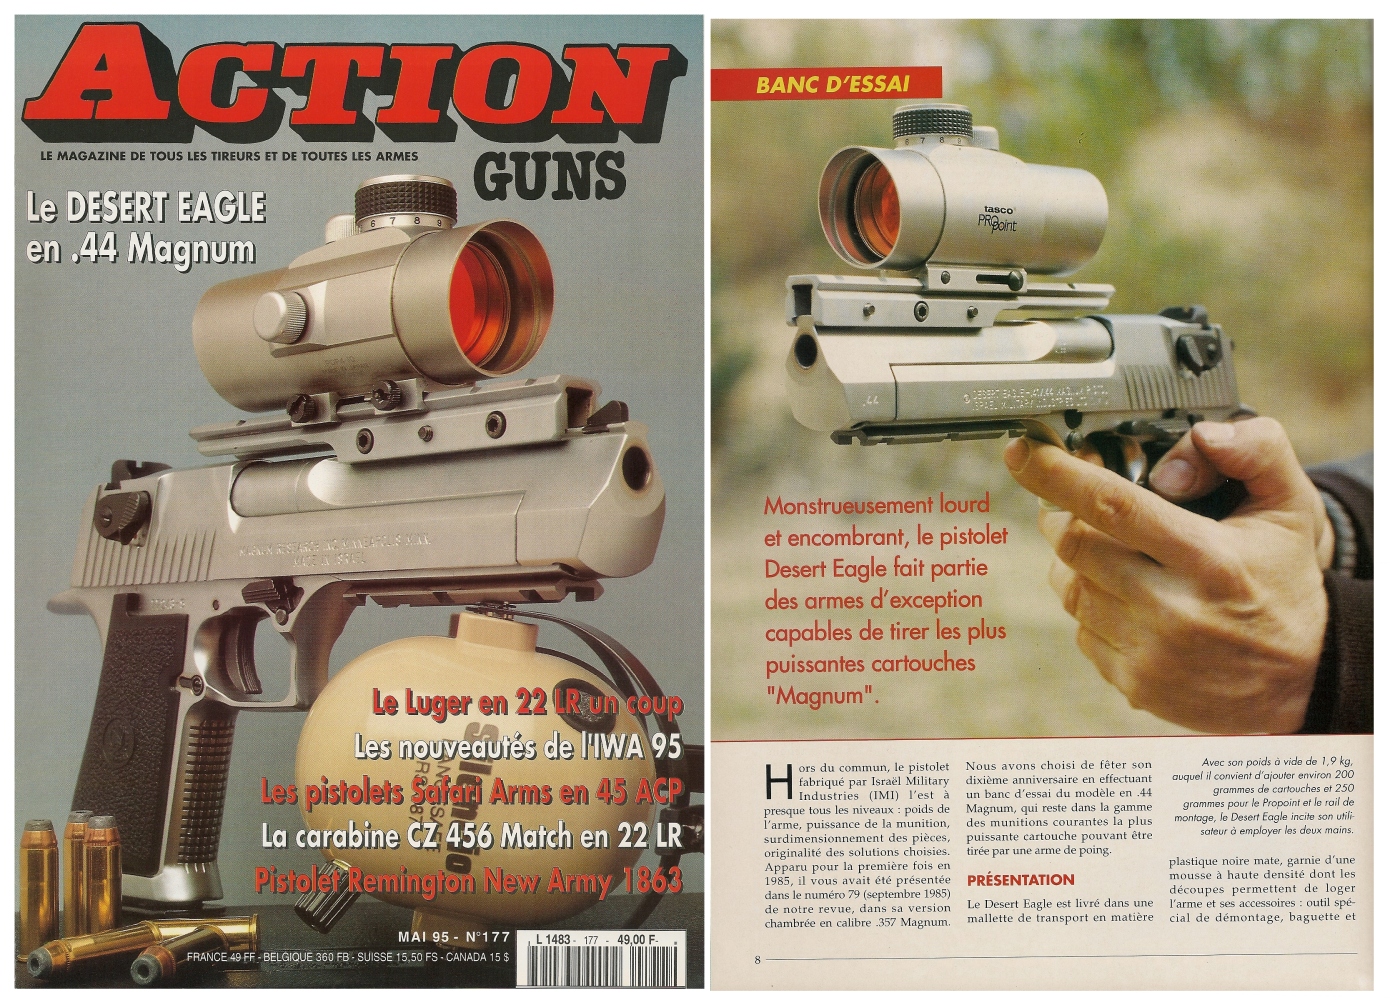 Le banc d'essai du pistolet Desert Eagle en calibre .44 Magnum a été publié sur 7 pages dans le magazine Action Guns n° 177 (mai 1995). 